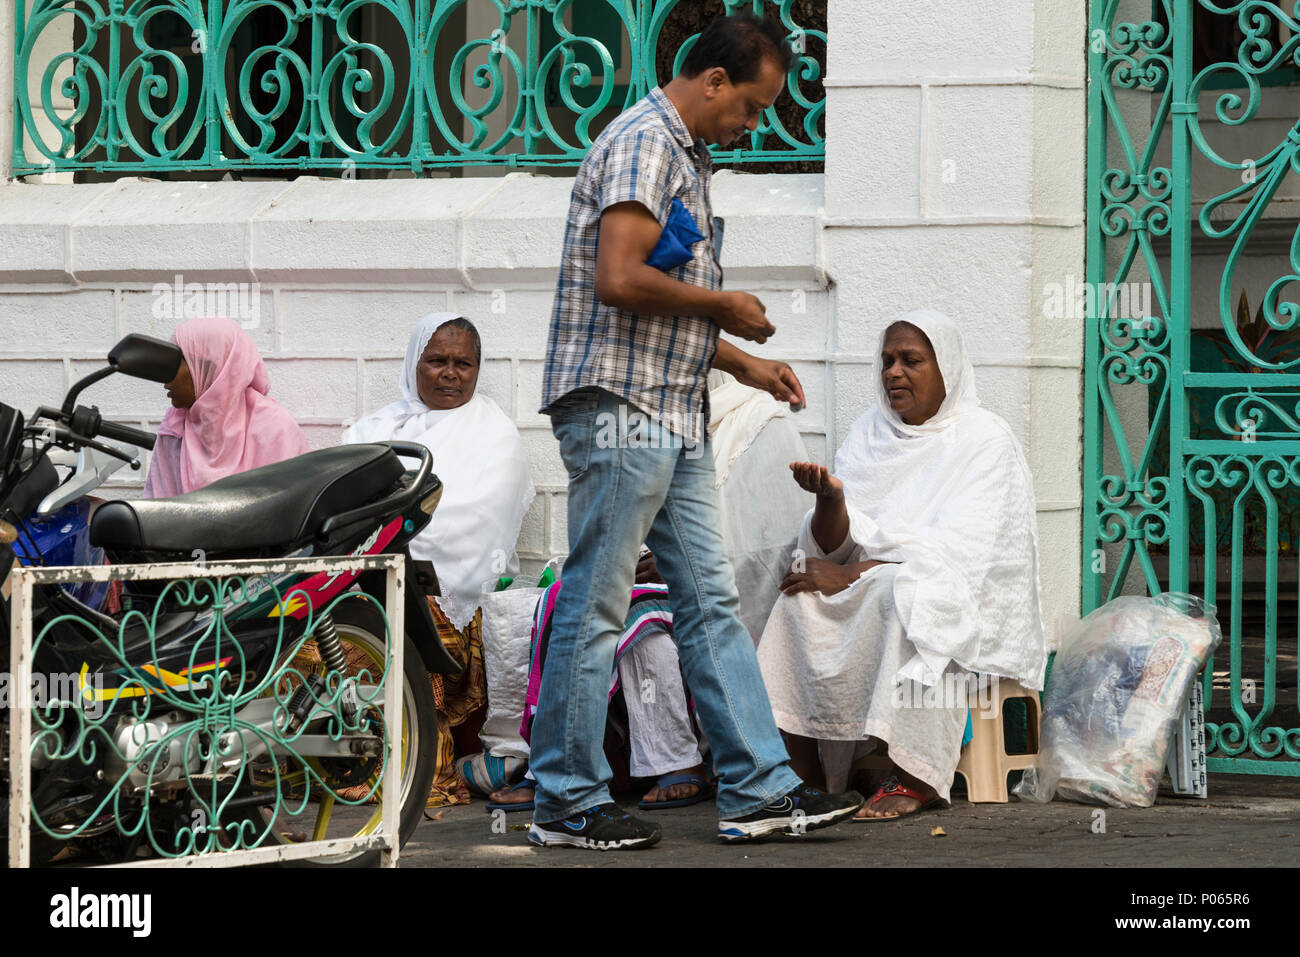 Ein Passant Geld geben zu einer Gruppe von Frauen sitzen auf der Straße warten auf Almosen außerhalb Jummah Mosque an einem Freitag, Port Louis, Mauritius Stockfoto